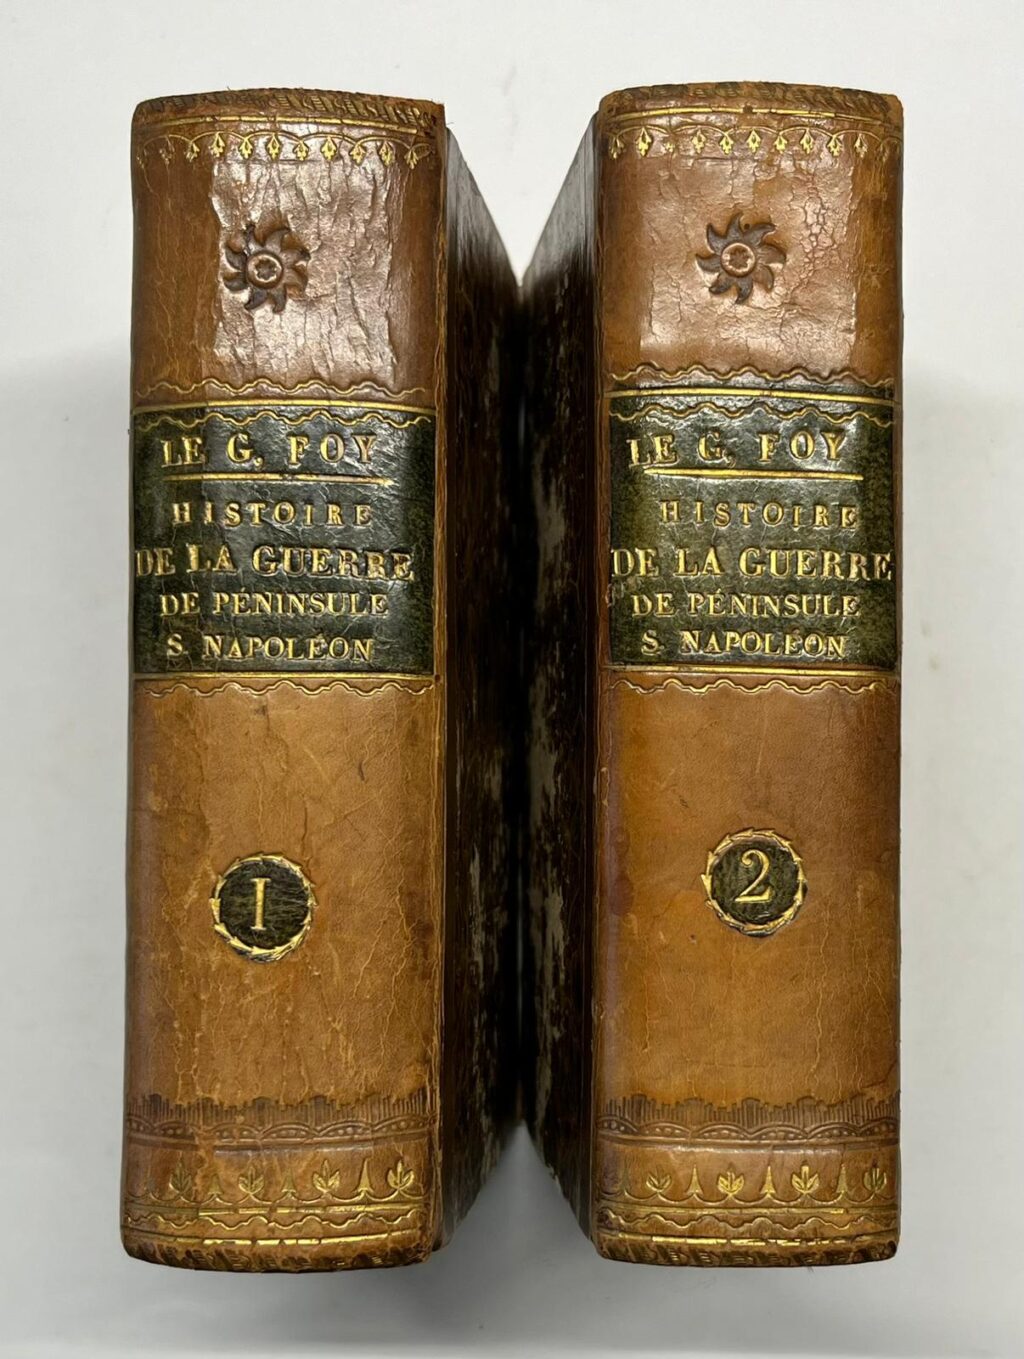 Napoleonic Wars, 1827, French | Histoire de la Guerre de la Péninsule sous Napoléon, Baudouin, Paris, 1827, 2 volumes.